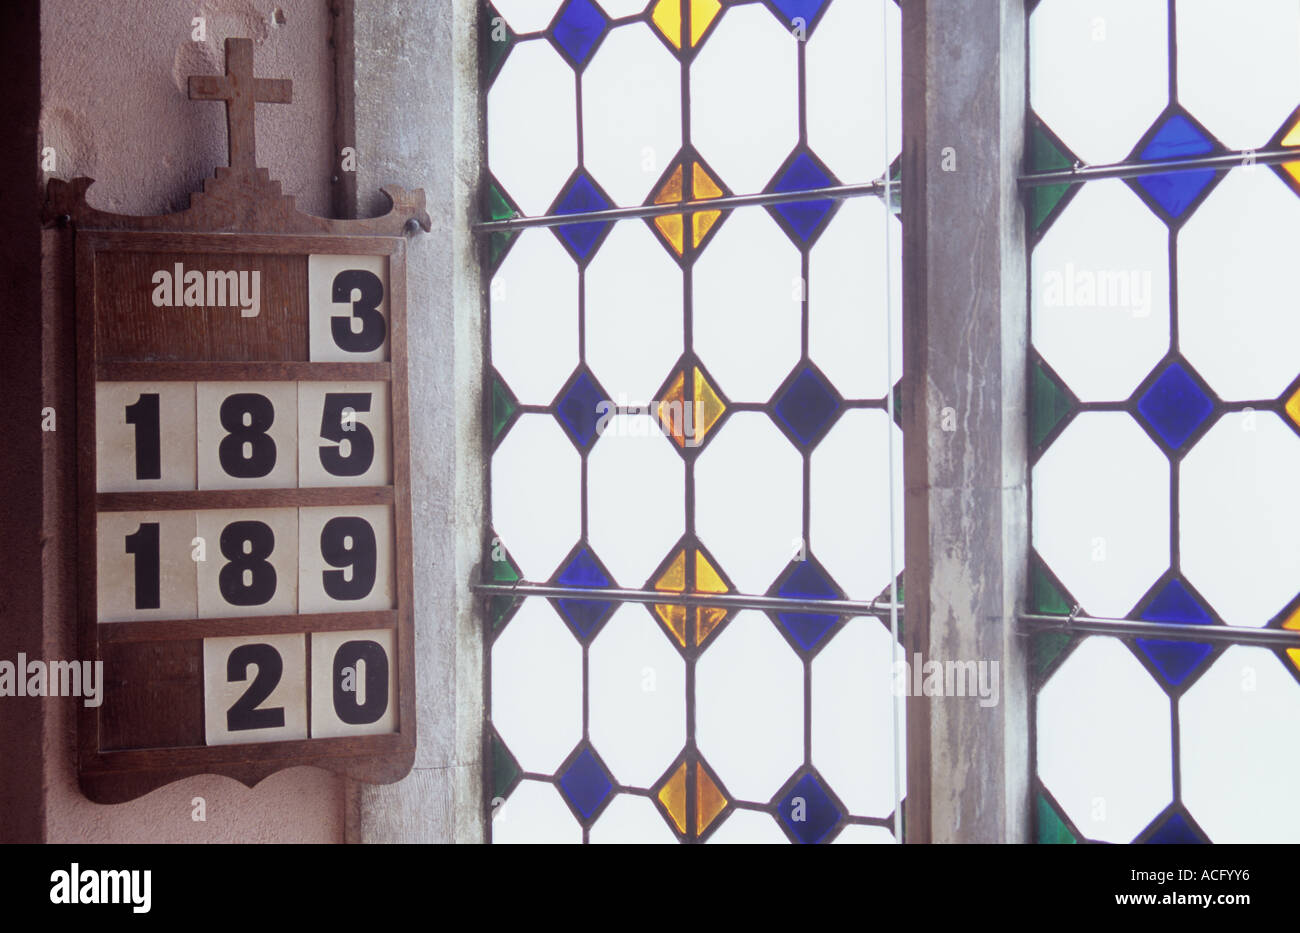 Board zeigt ausgewählte Hymne Zahlen an Rosa Wand hängen neben gefrostet Bleiglasfenster mit farbigen rautenförmige Einsätze Stockfoto